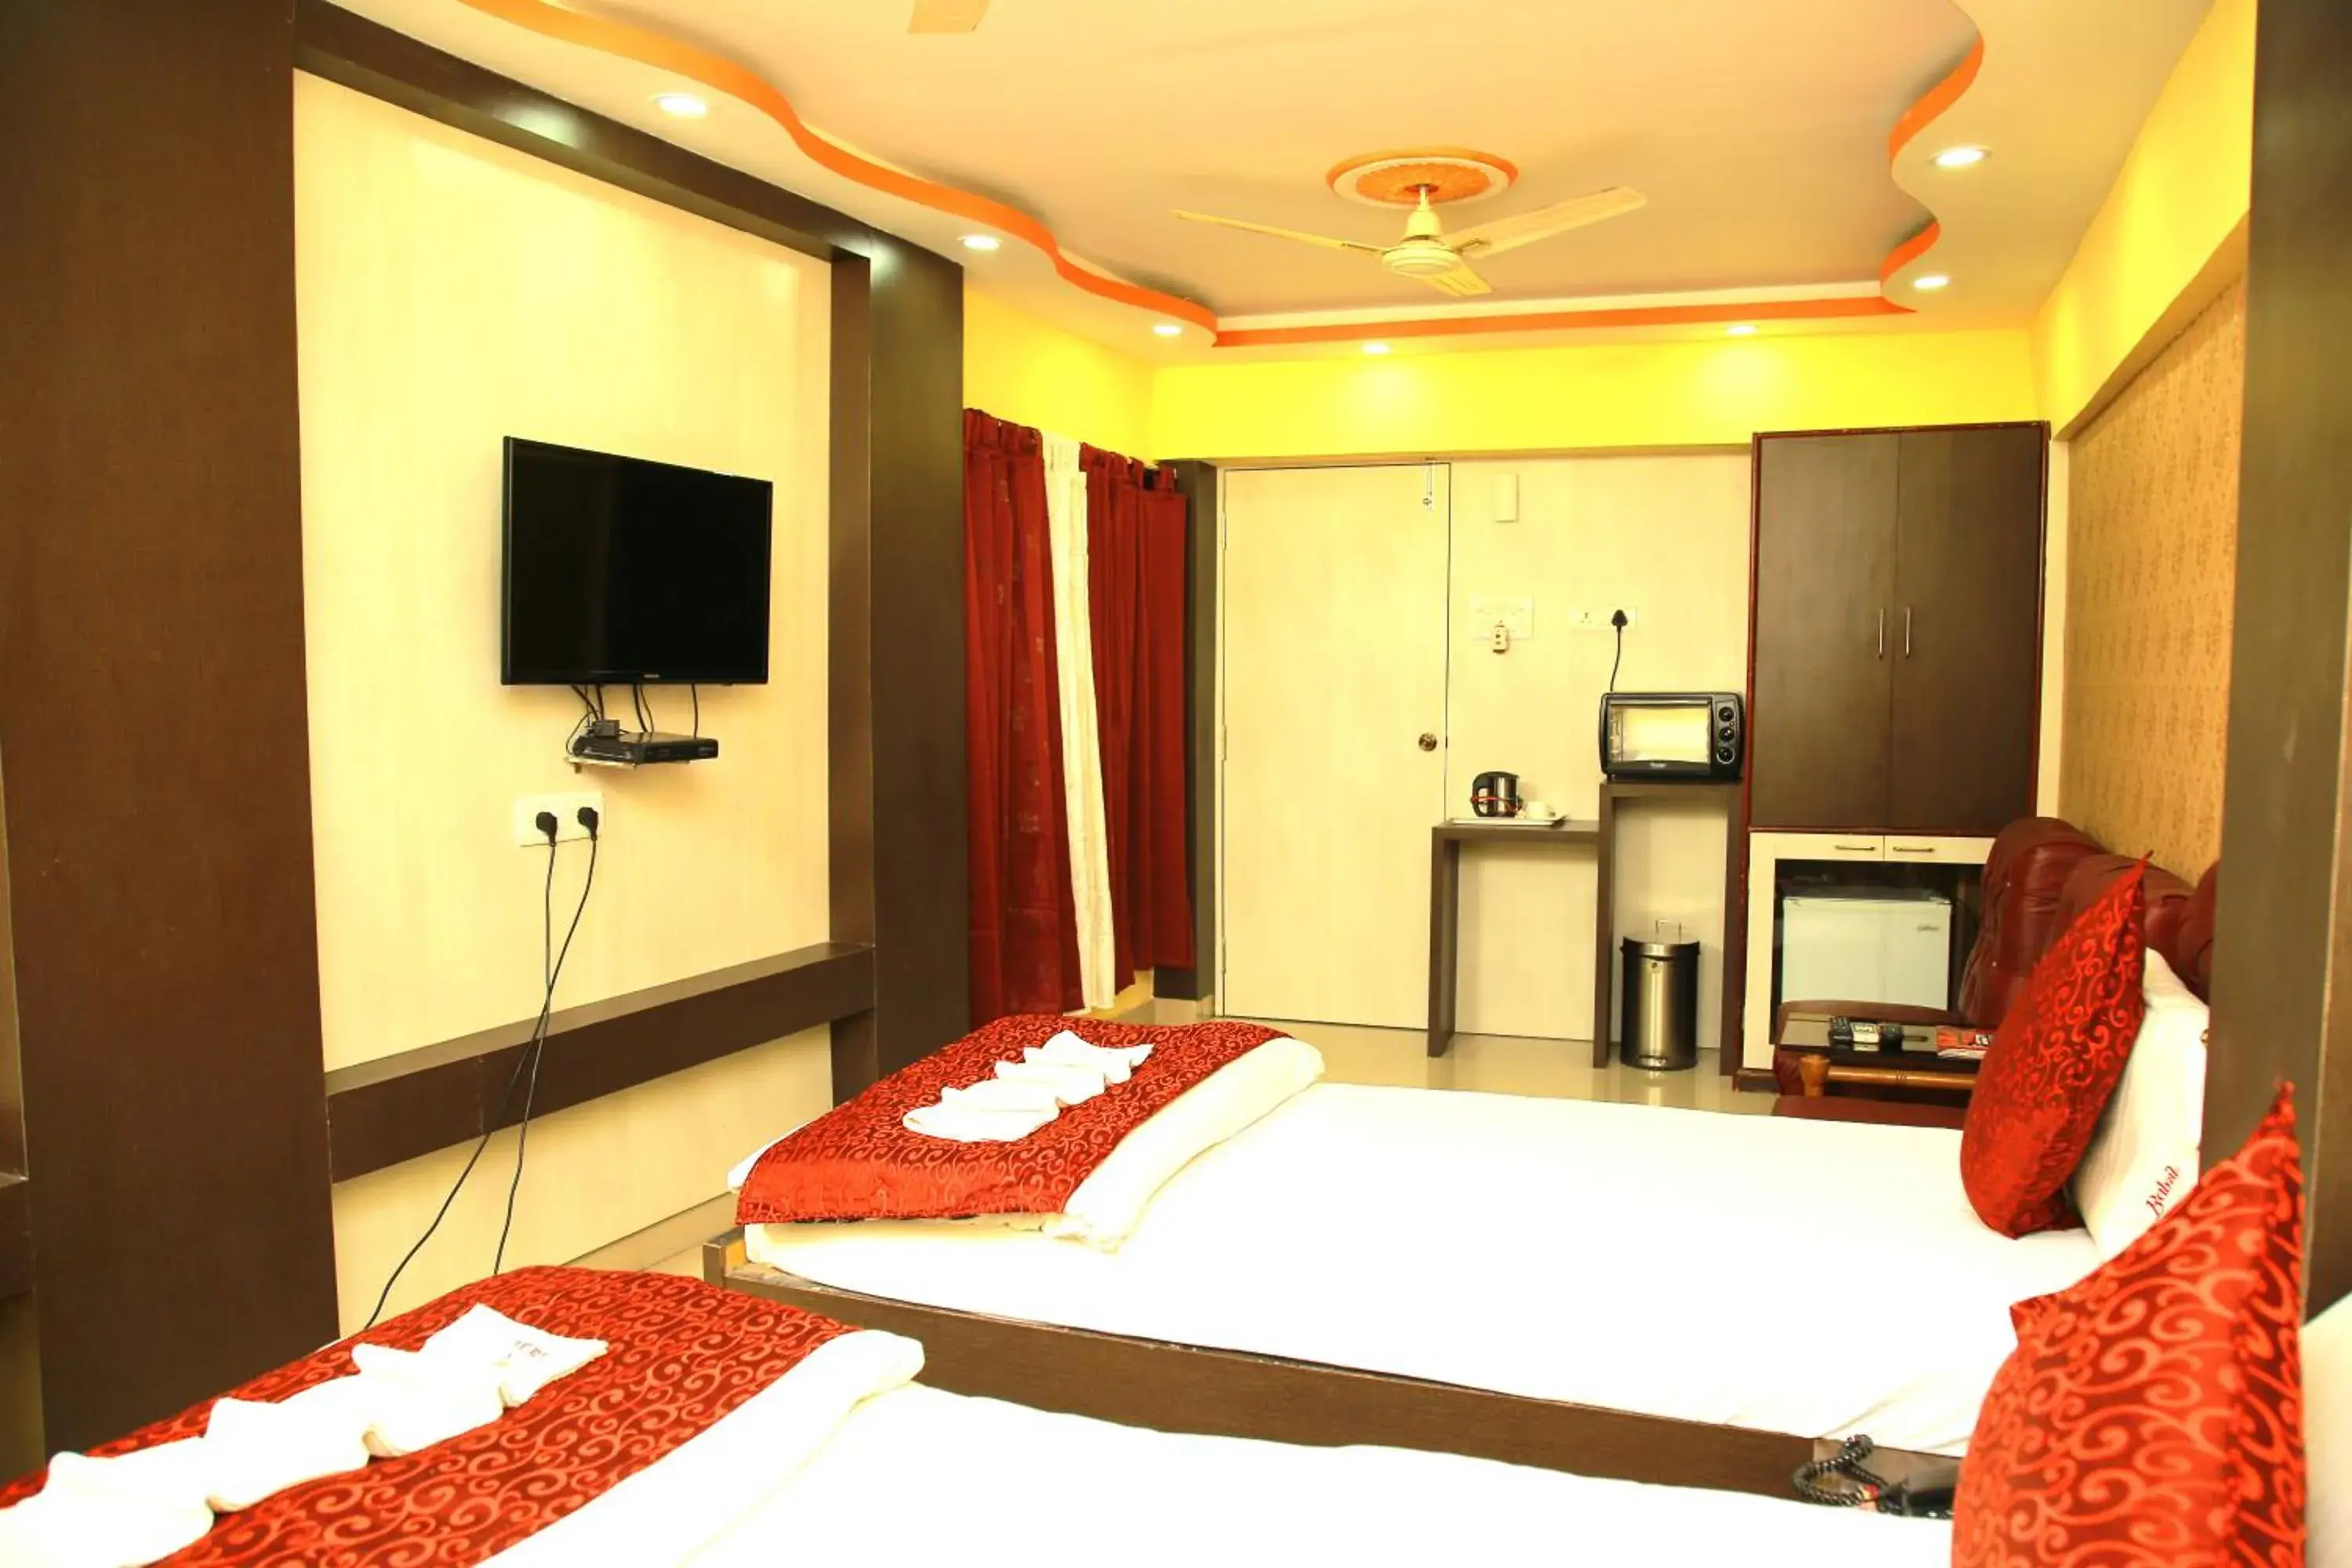 Coffee/tea facilities, Bed in Babul Hotel